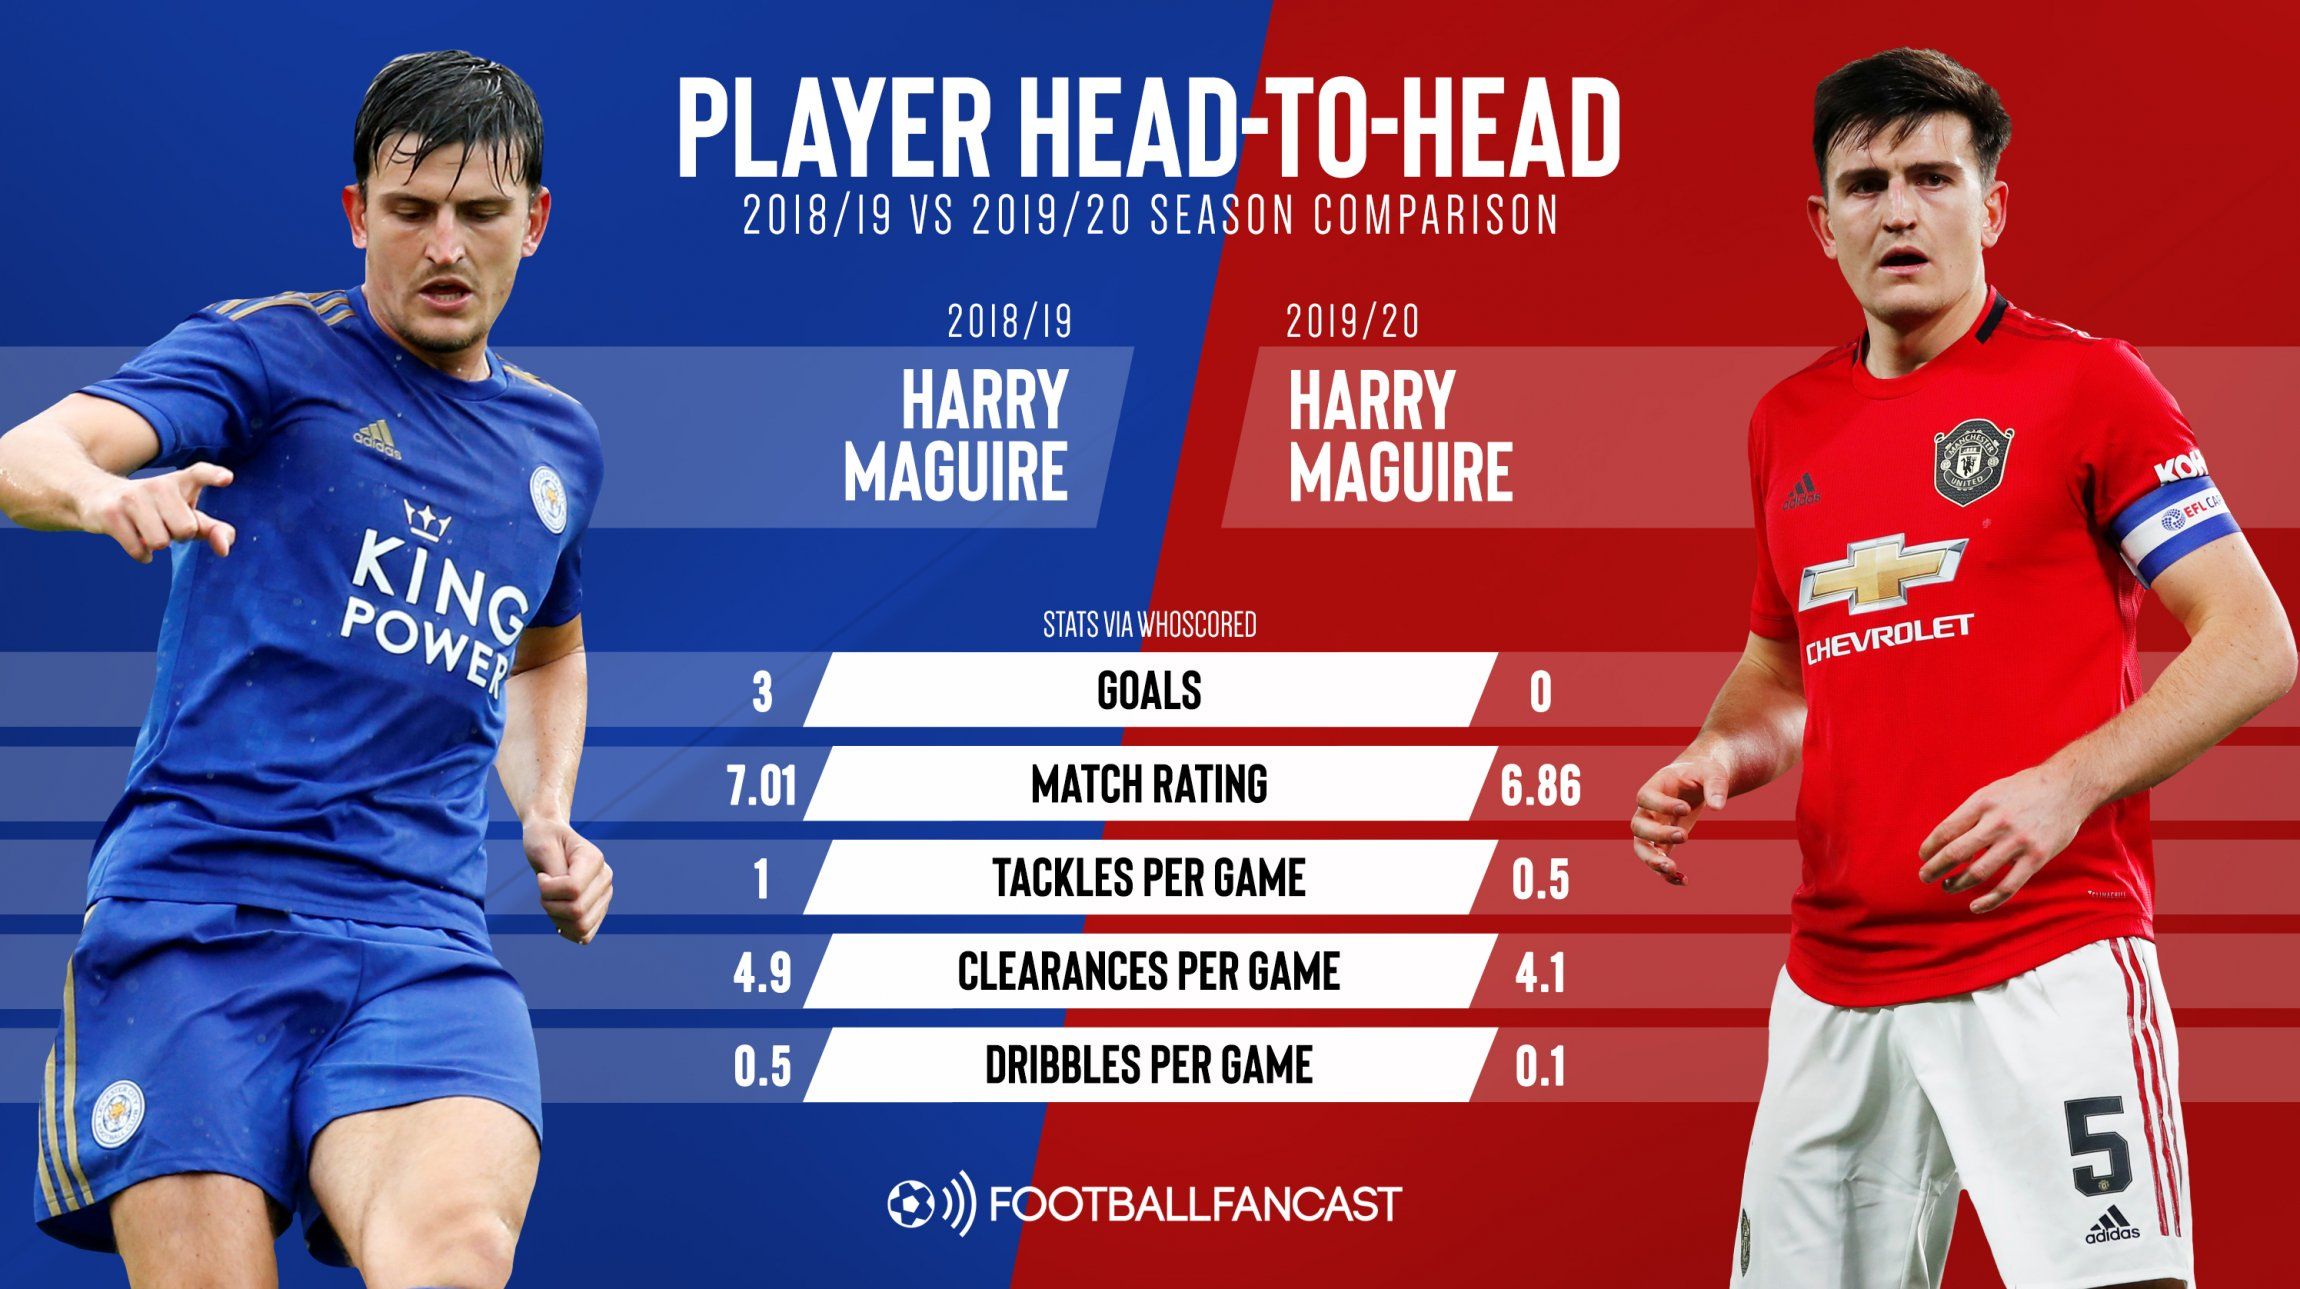 Premier League for Harry Maguire